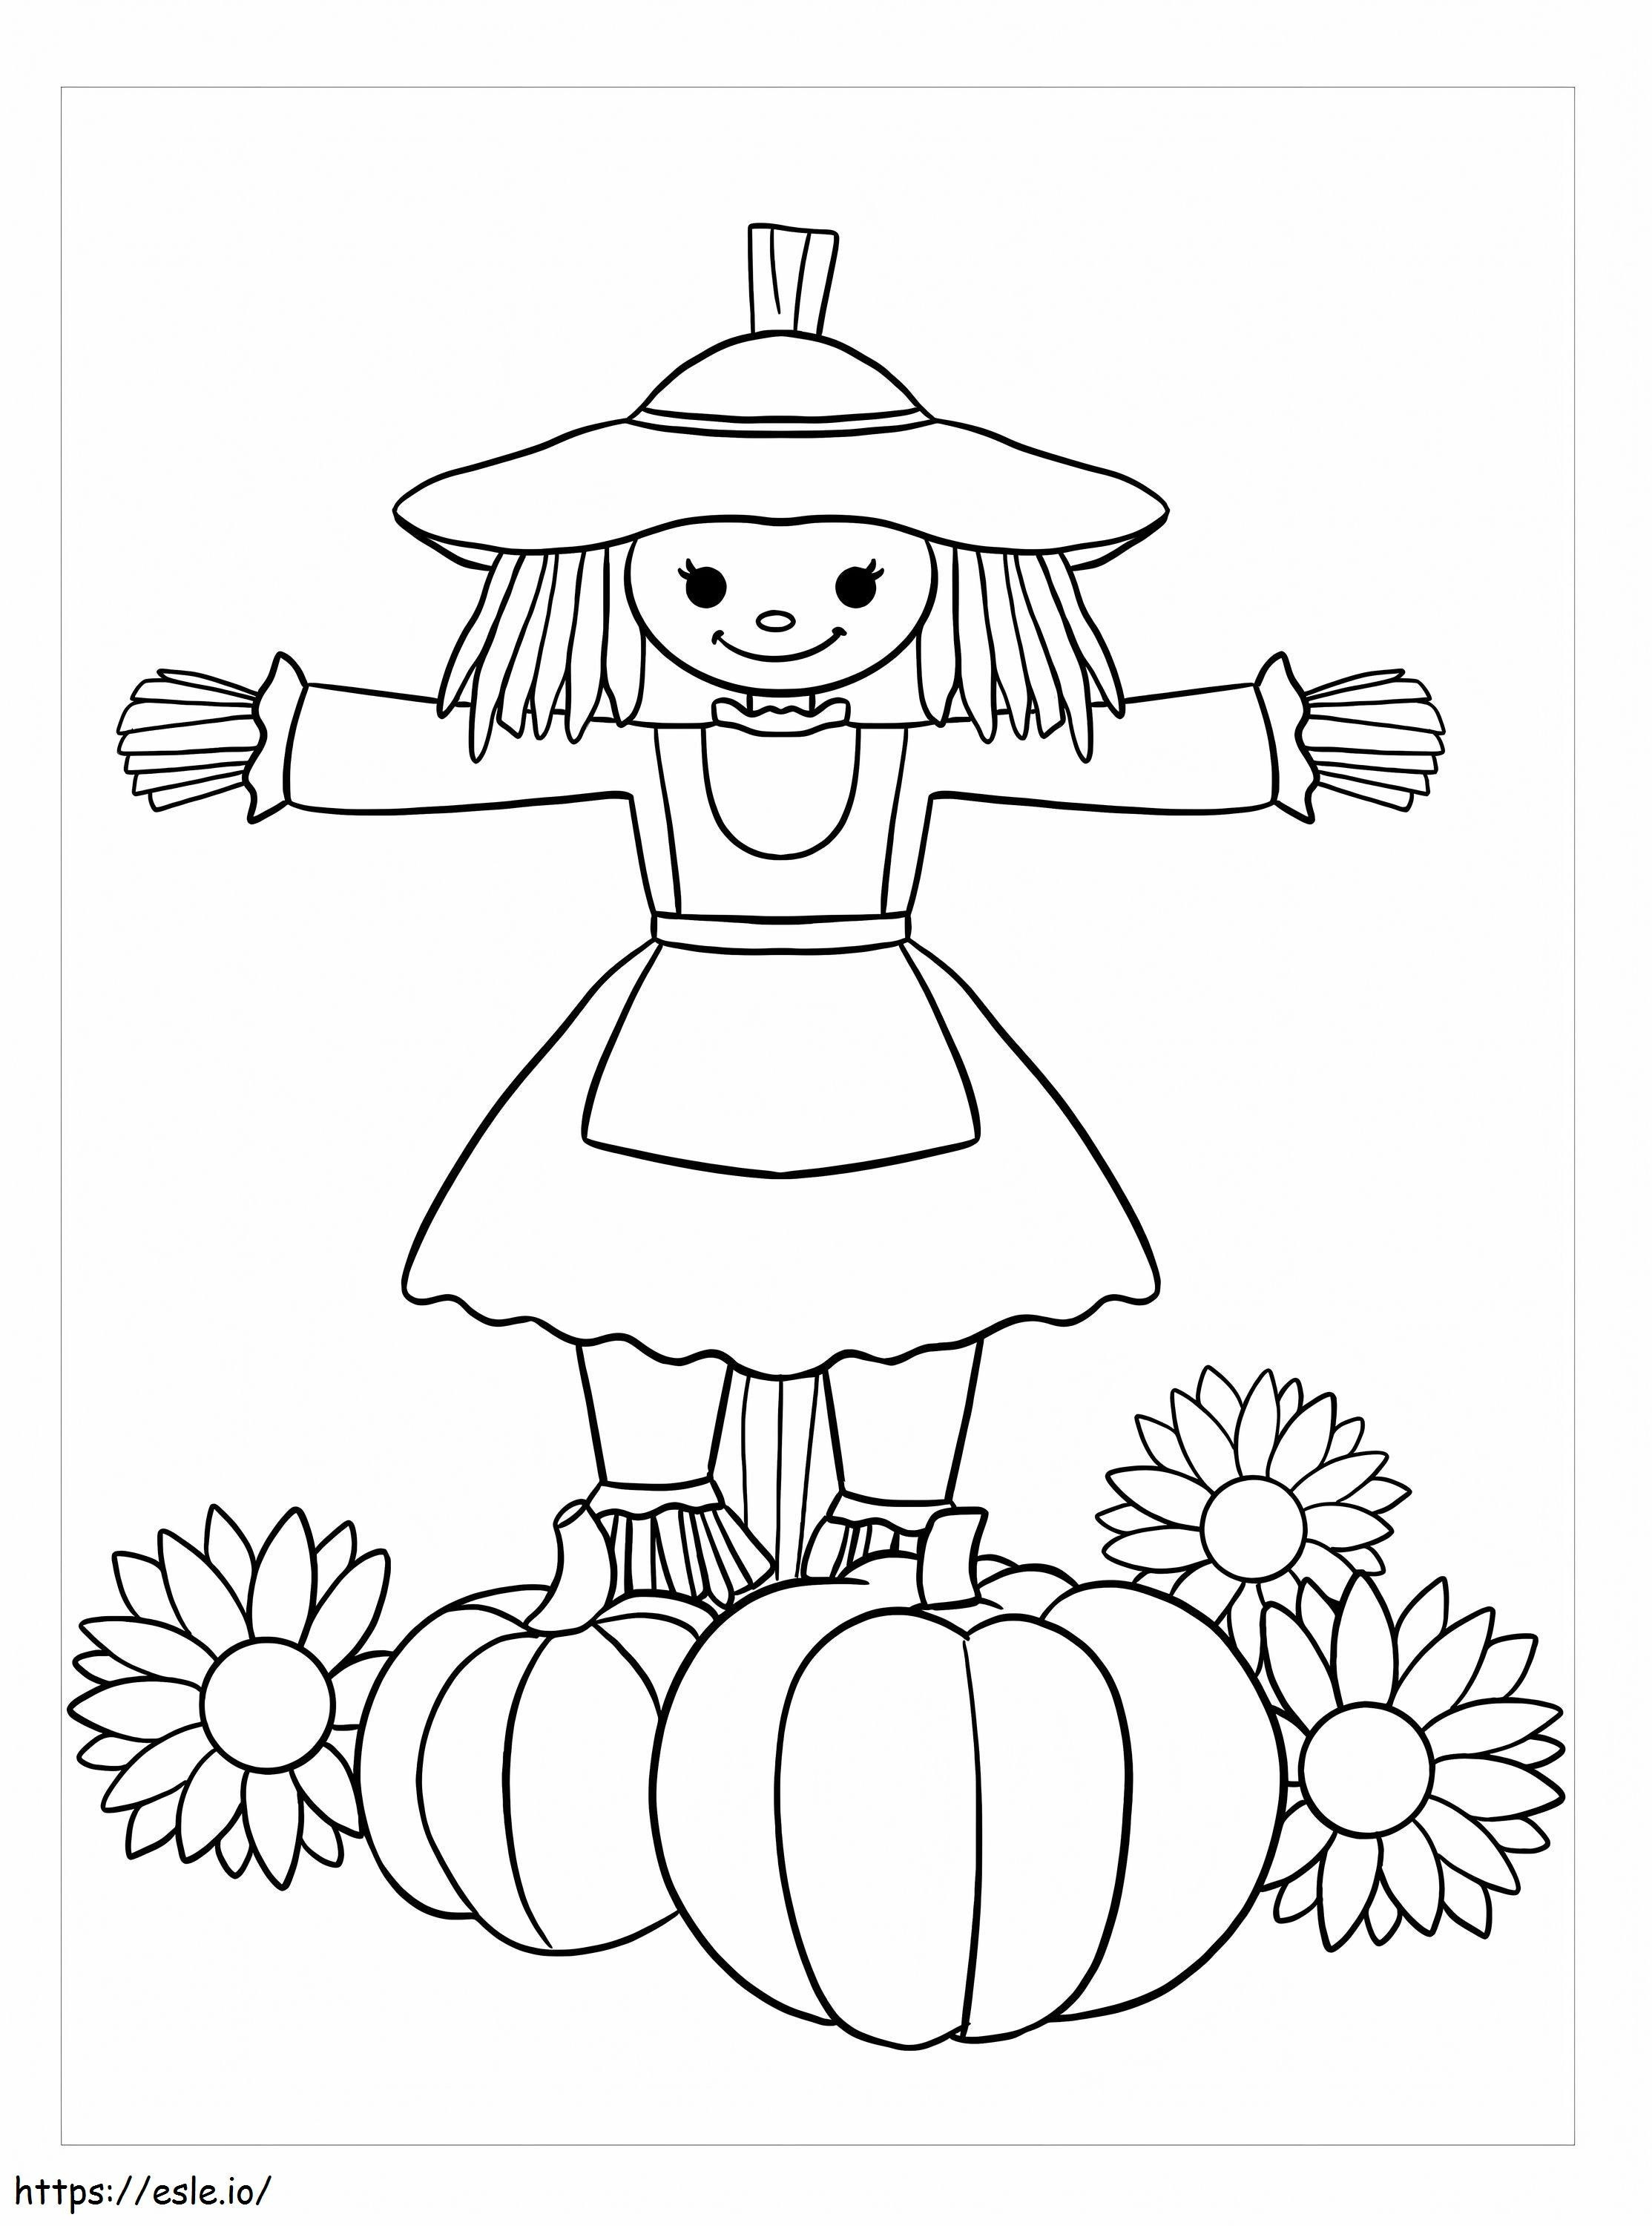 Scarecrow Dziewczyna Z Dynią I Kwiatem kolorowanka